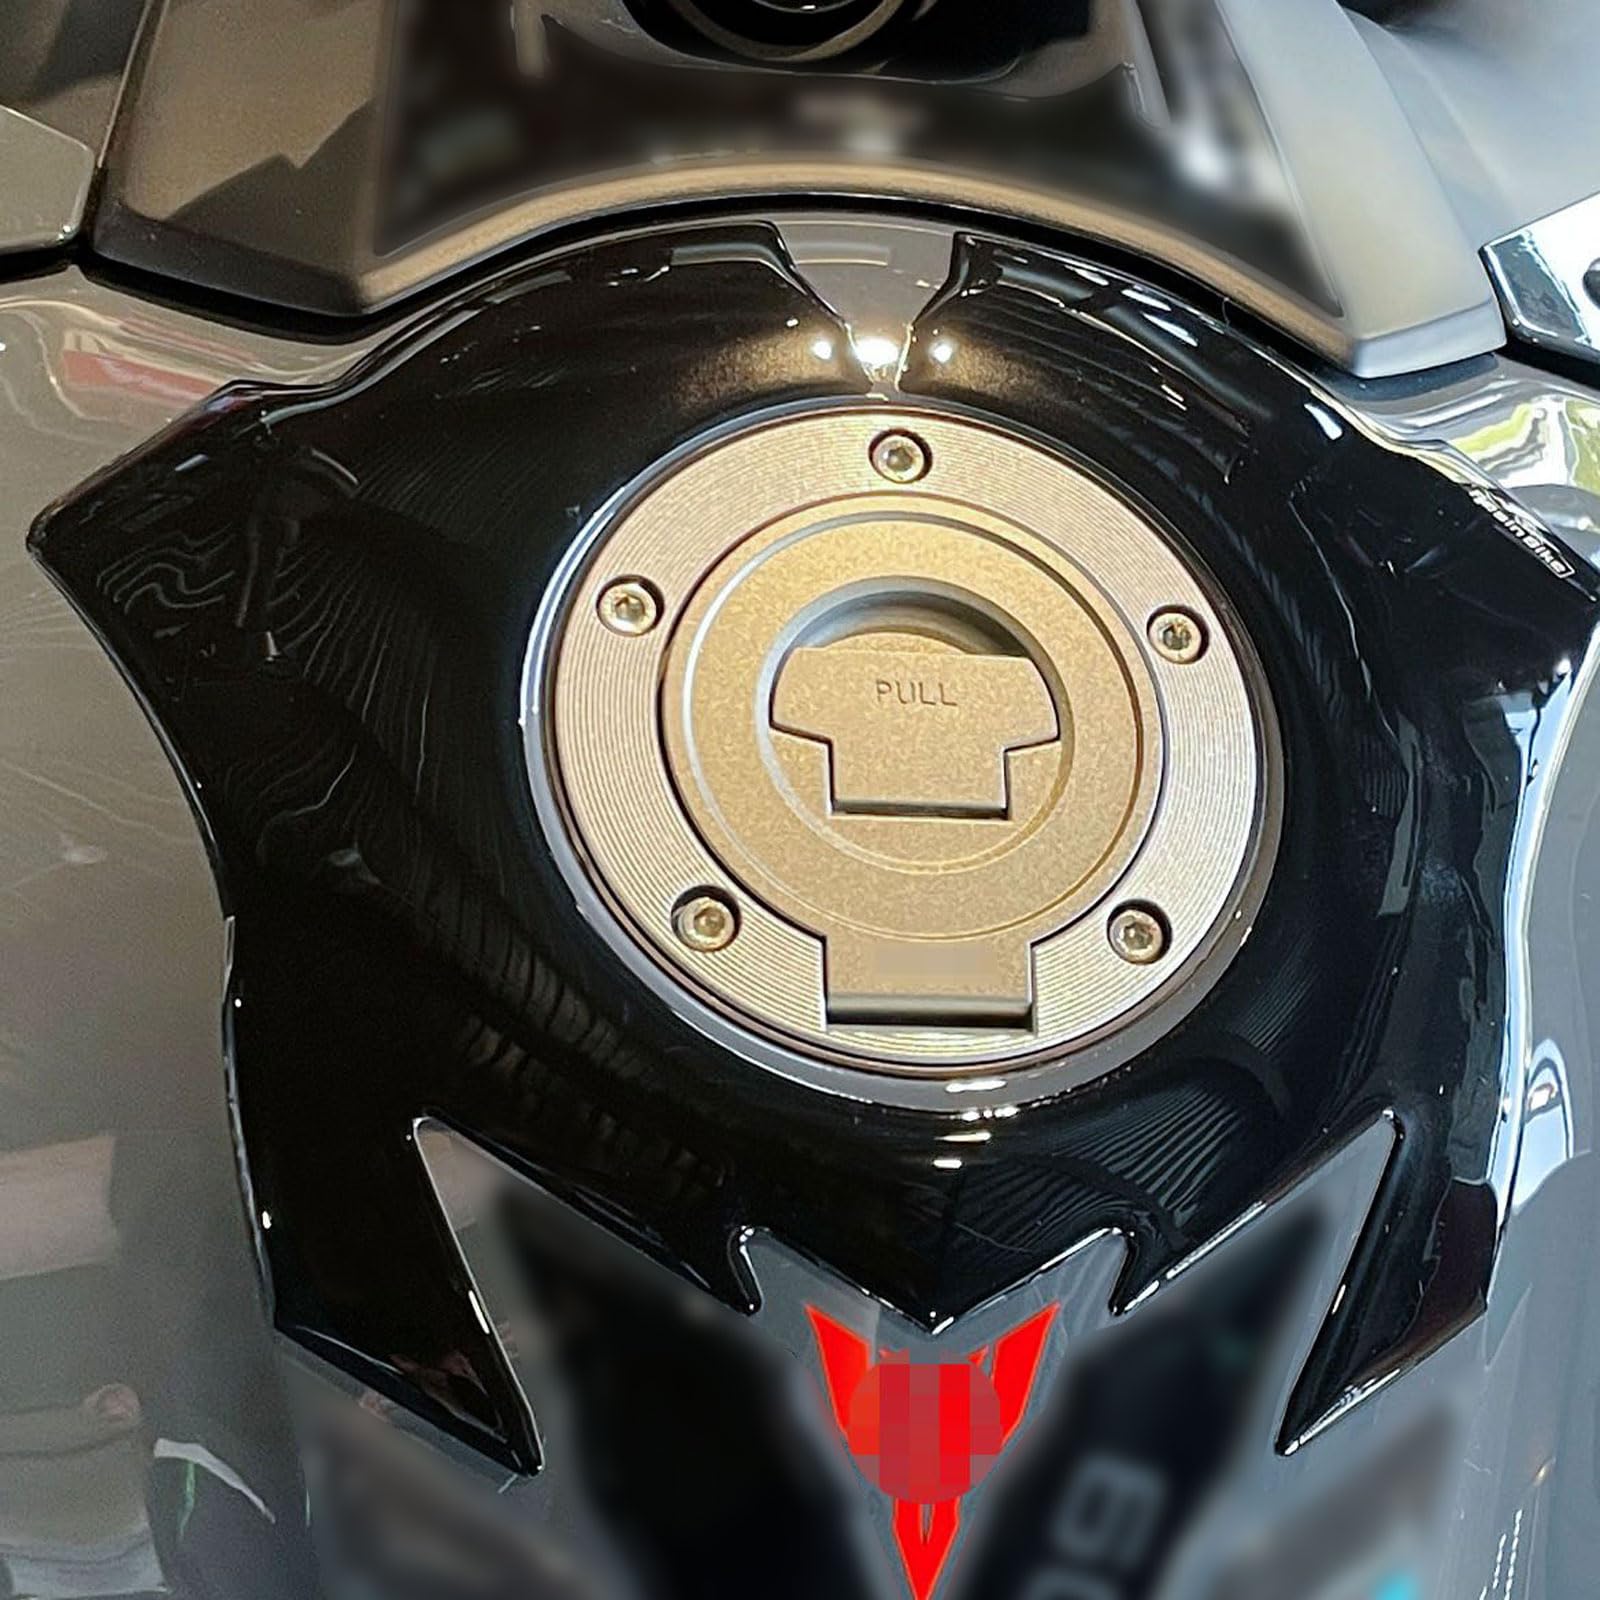 Resin Bike Aufkleber für Motorrad Kompatibel mit Yamaha MT 09 2022. Schutzkappe für den Tankdeckel vor Stößen und Kratzern. 3D-Harzklebstoff - Stickers - Made in Italy von Resin Bike